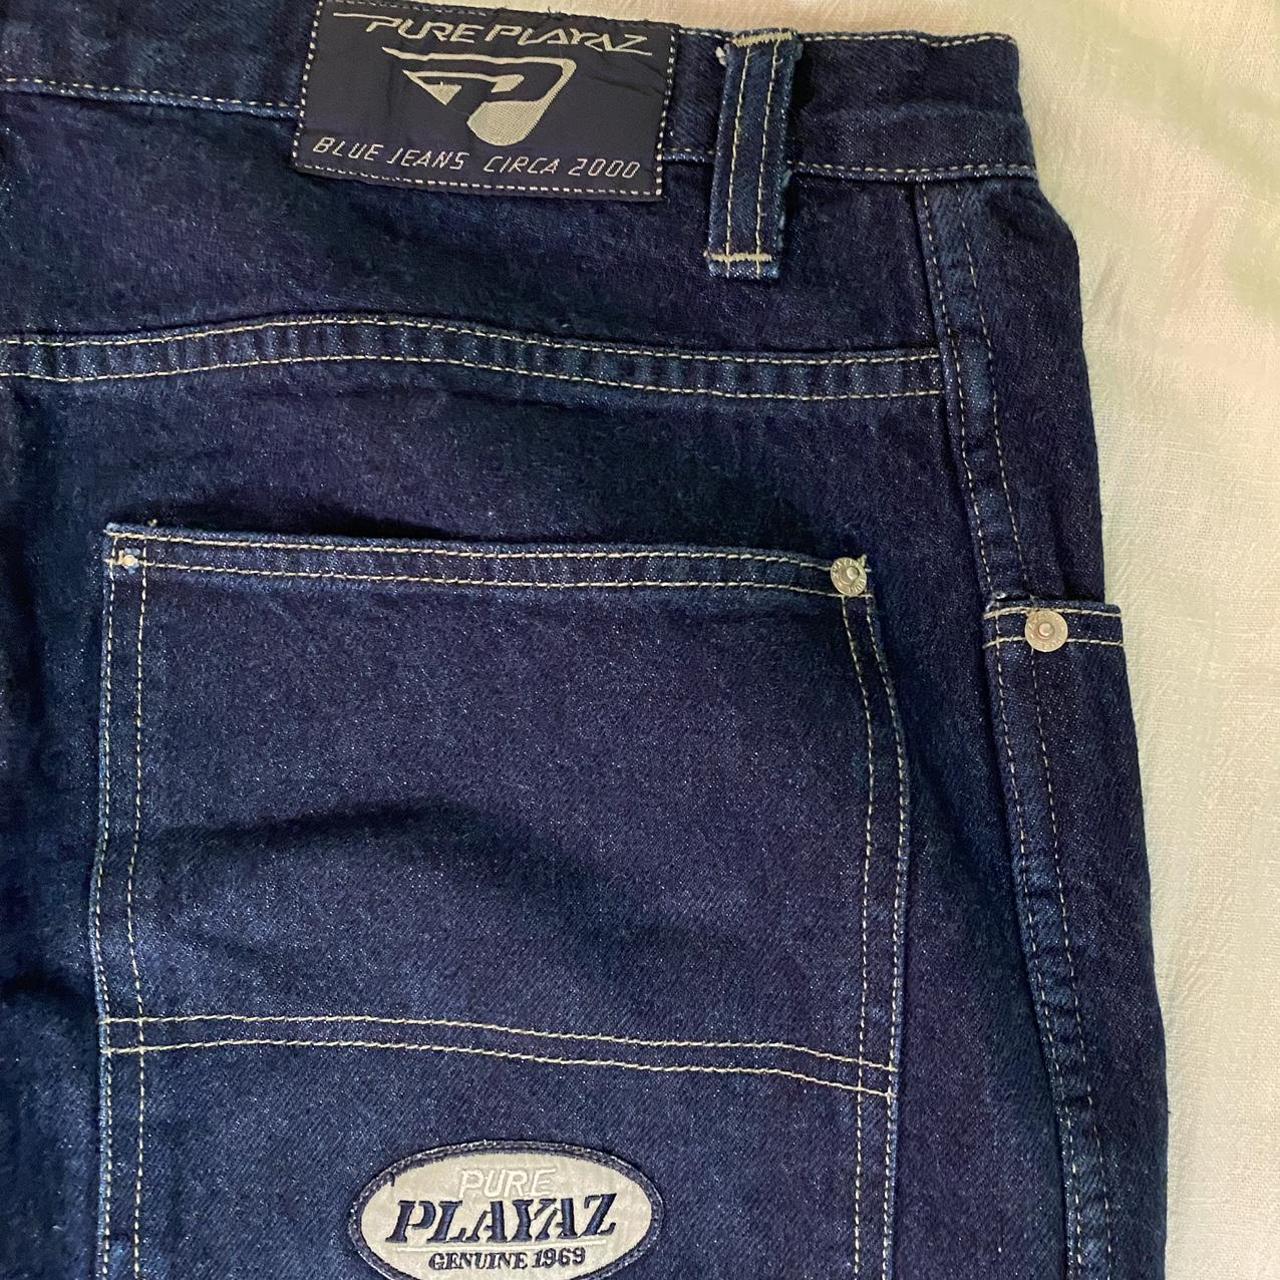 Vintage Pure Playaz Product Y2K Jeans Size... - Depop